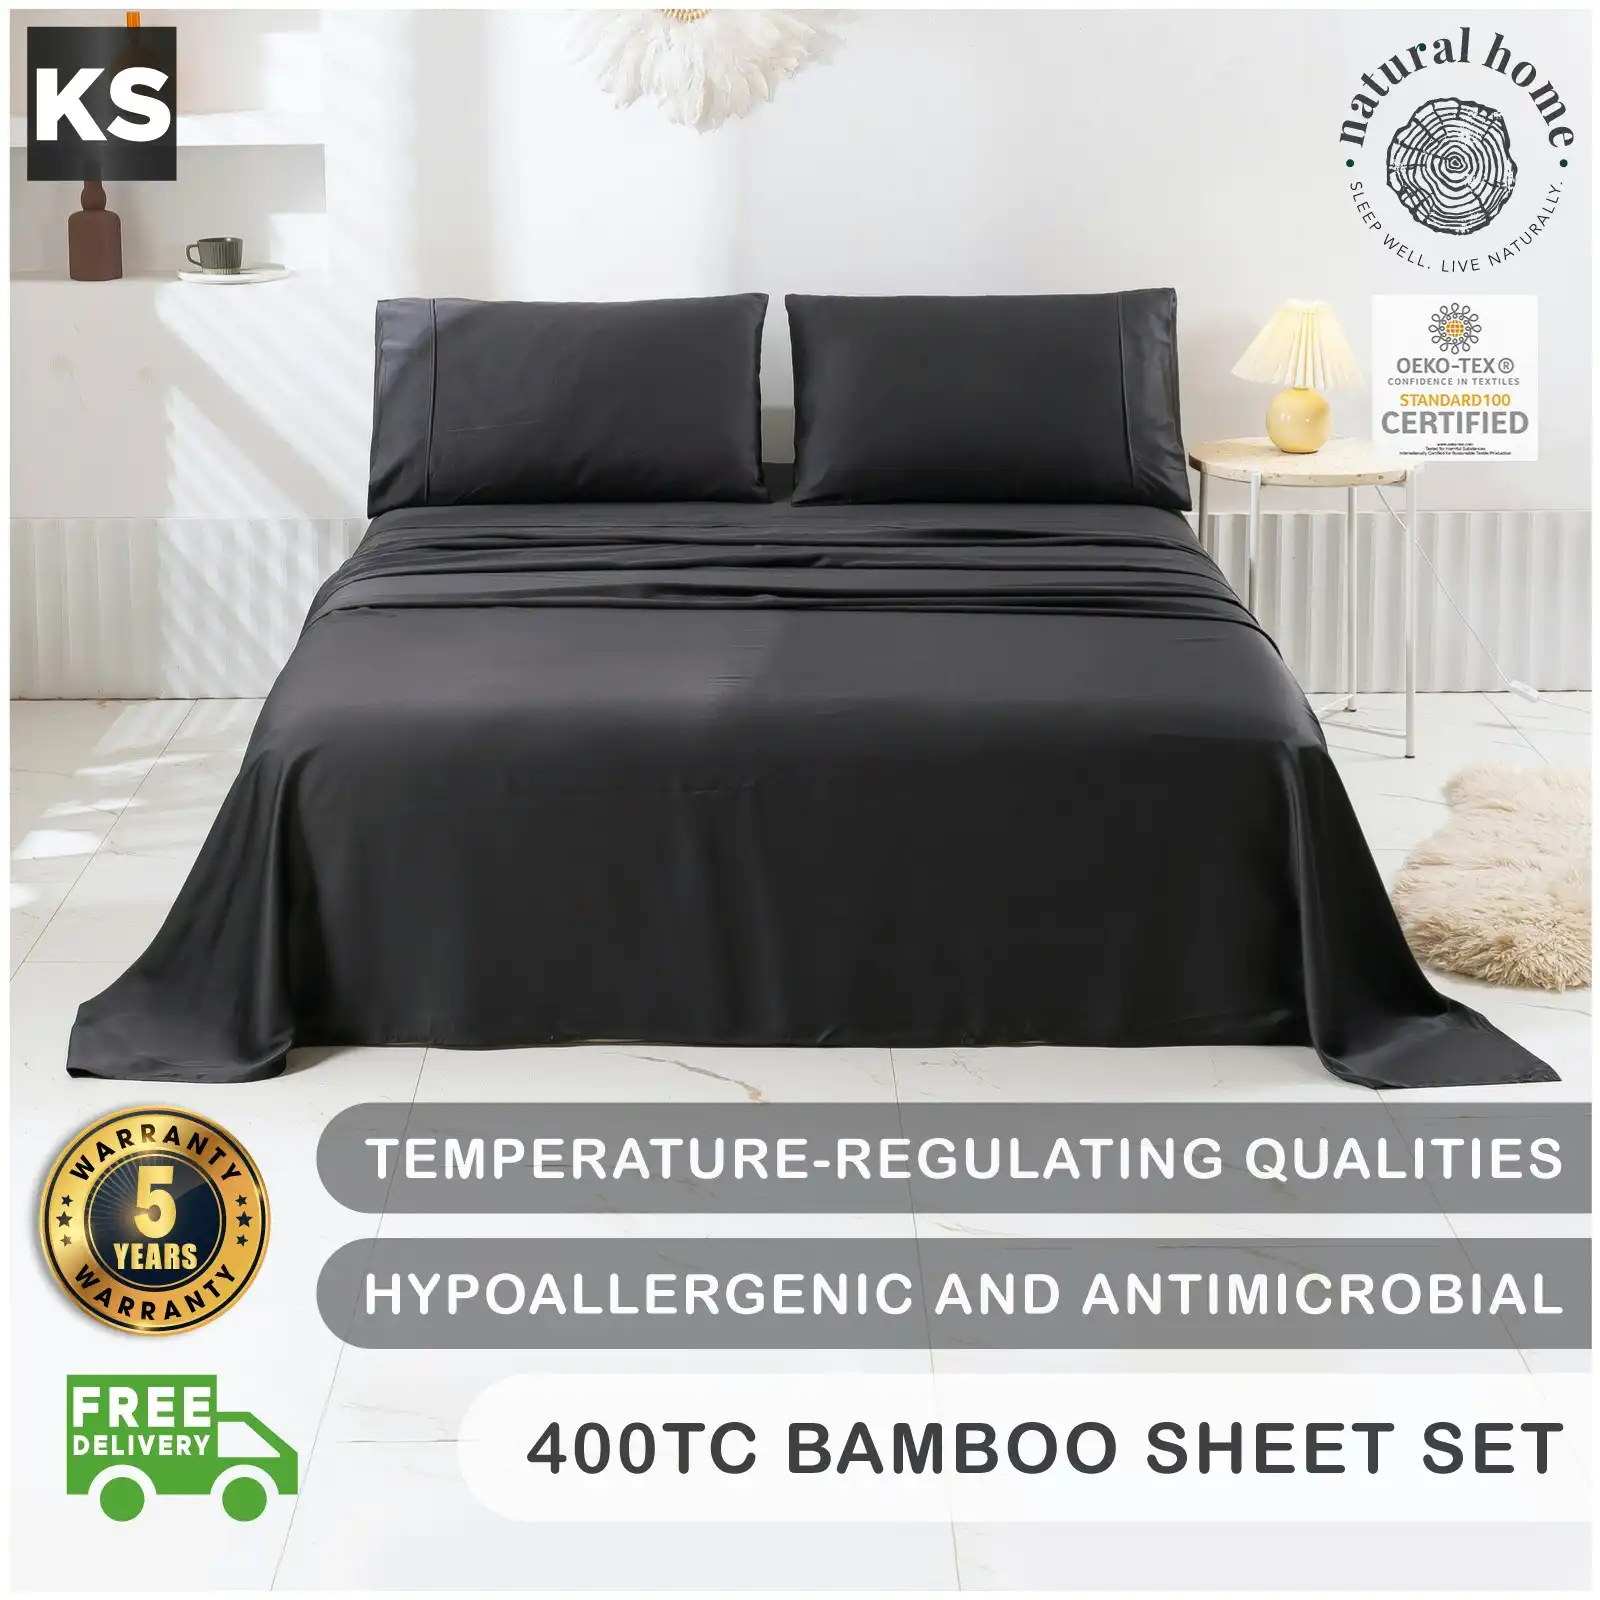 Natural Home Bamboo Sheet Set Charcoal King Single Bed